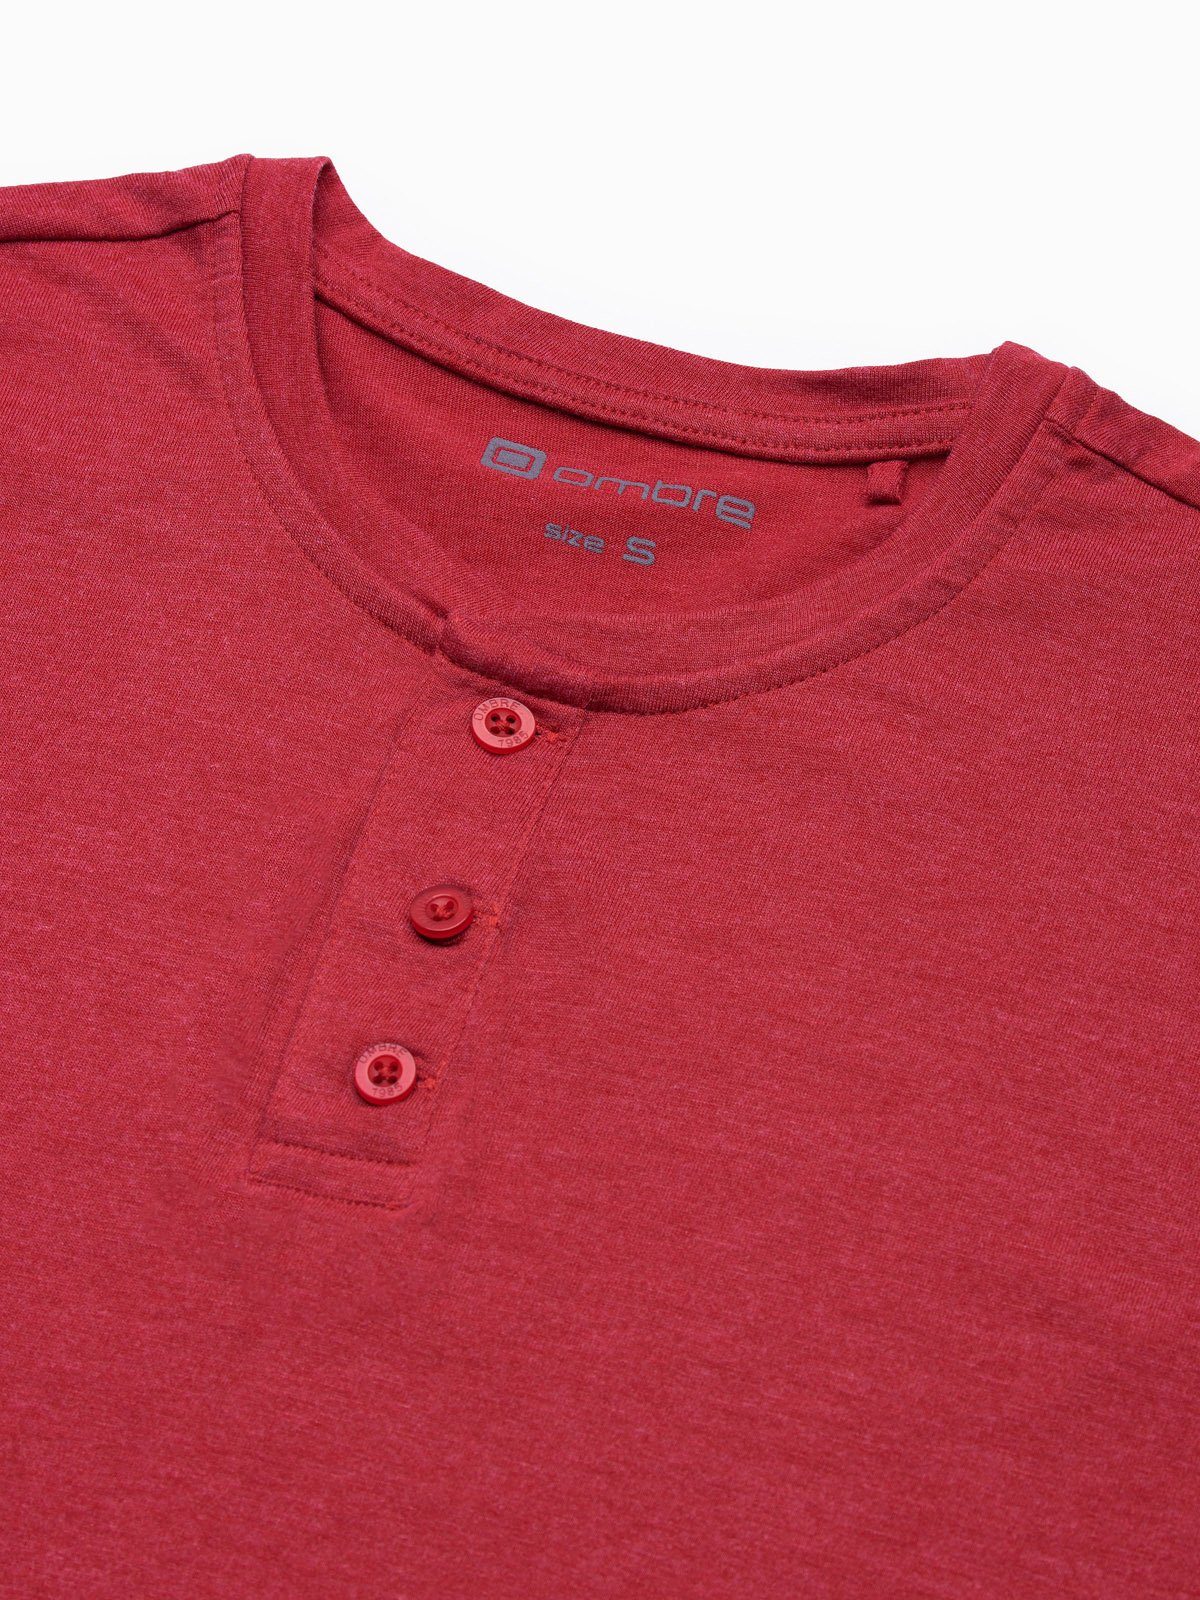 OMBRE Einfarbiges T-Shirt rot Herren-T-Shirt meliert M - S1390